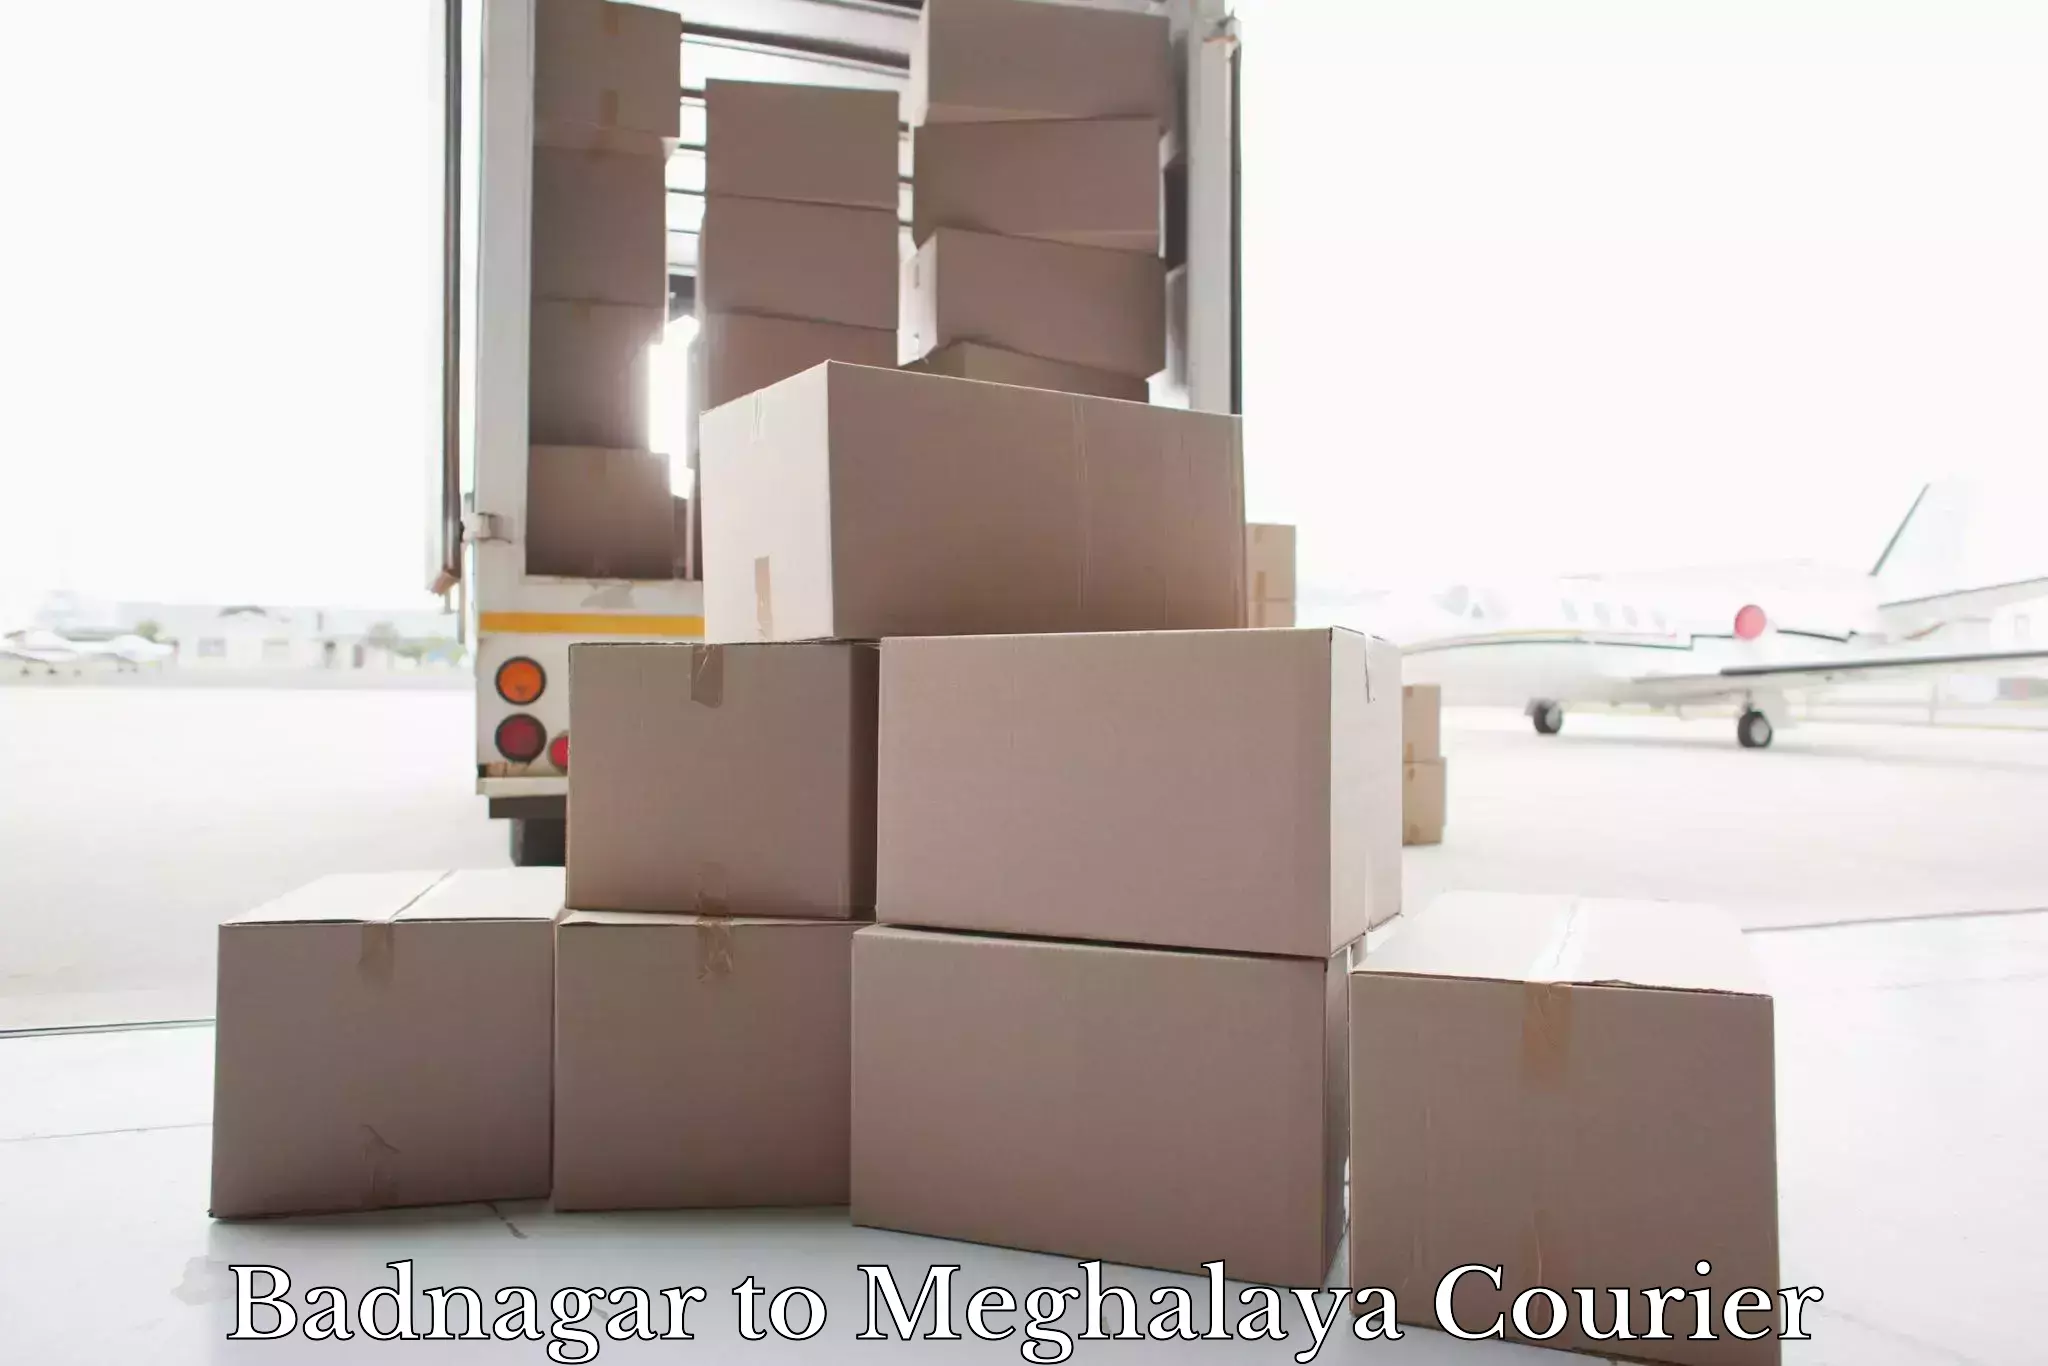 Baggage transport estimate Badnagar to Meghalaya